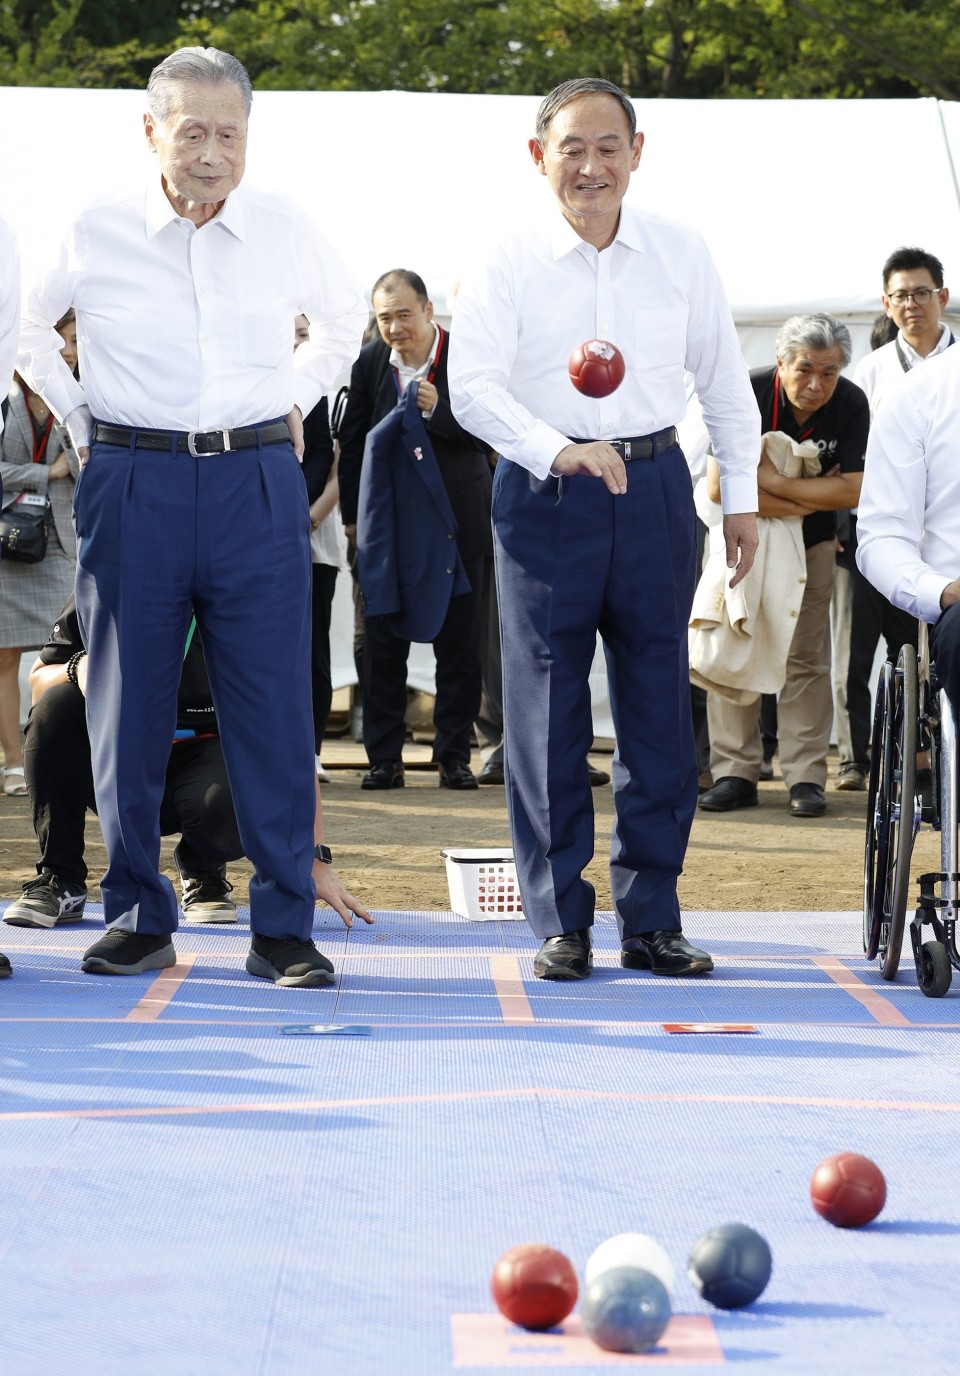 Ảnh được chụp vào tháng 8 năm ngoái khi còn là Chánh Văn phòng Nội các Nhật Bản, ông Yoshihide Suga (bên phải) đang thử chơi boccia tại một sự kiện quảng bá cho Paralympics Tokyo 2020 (Ảnh: Kyodo)